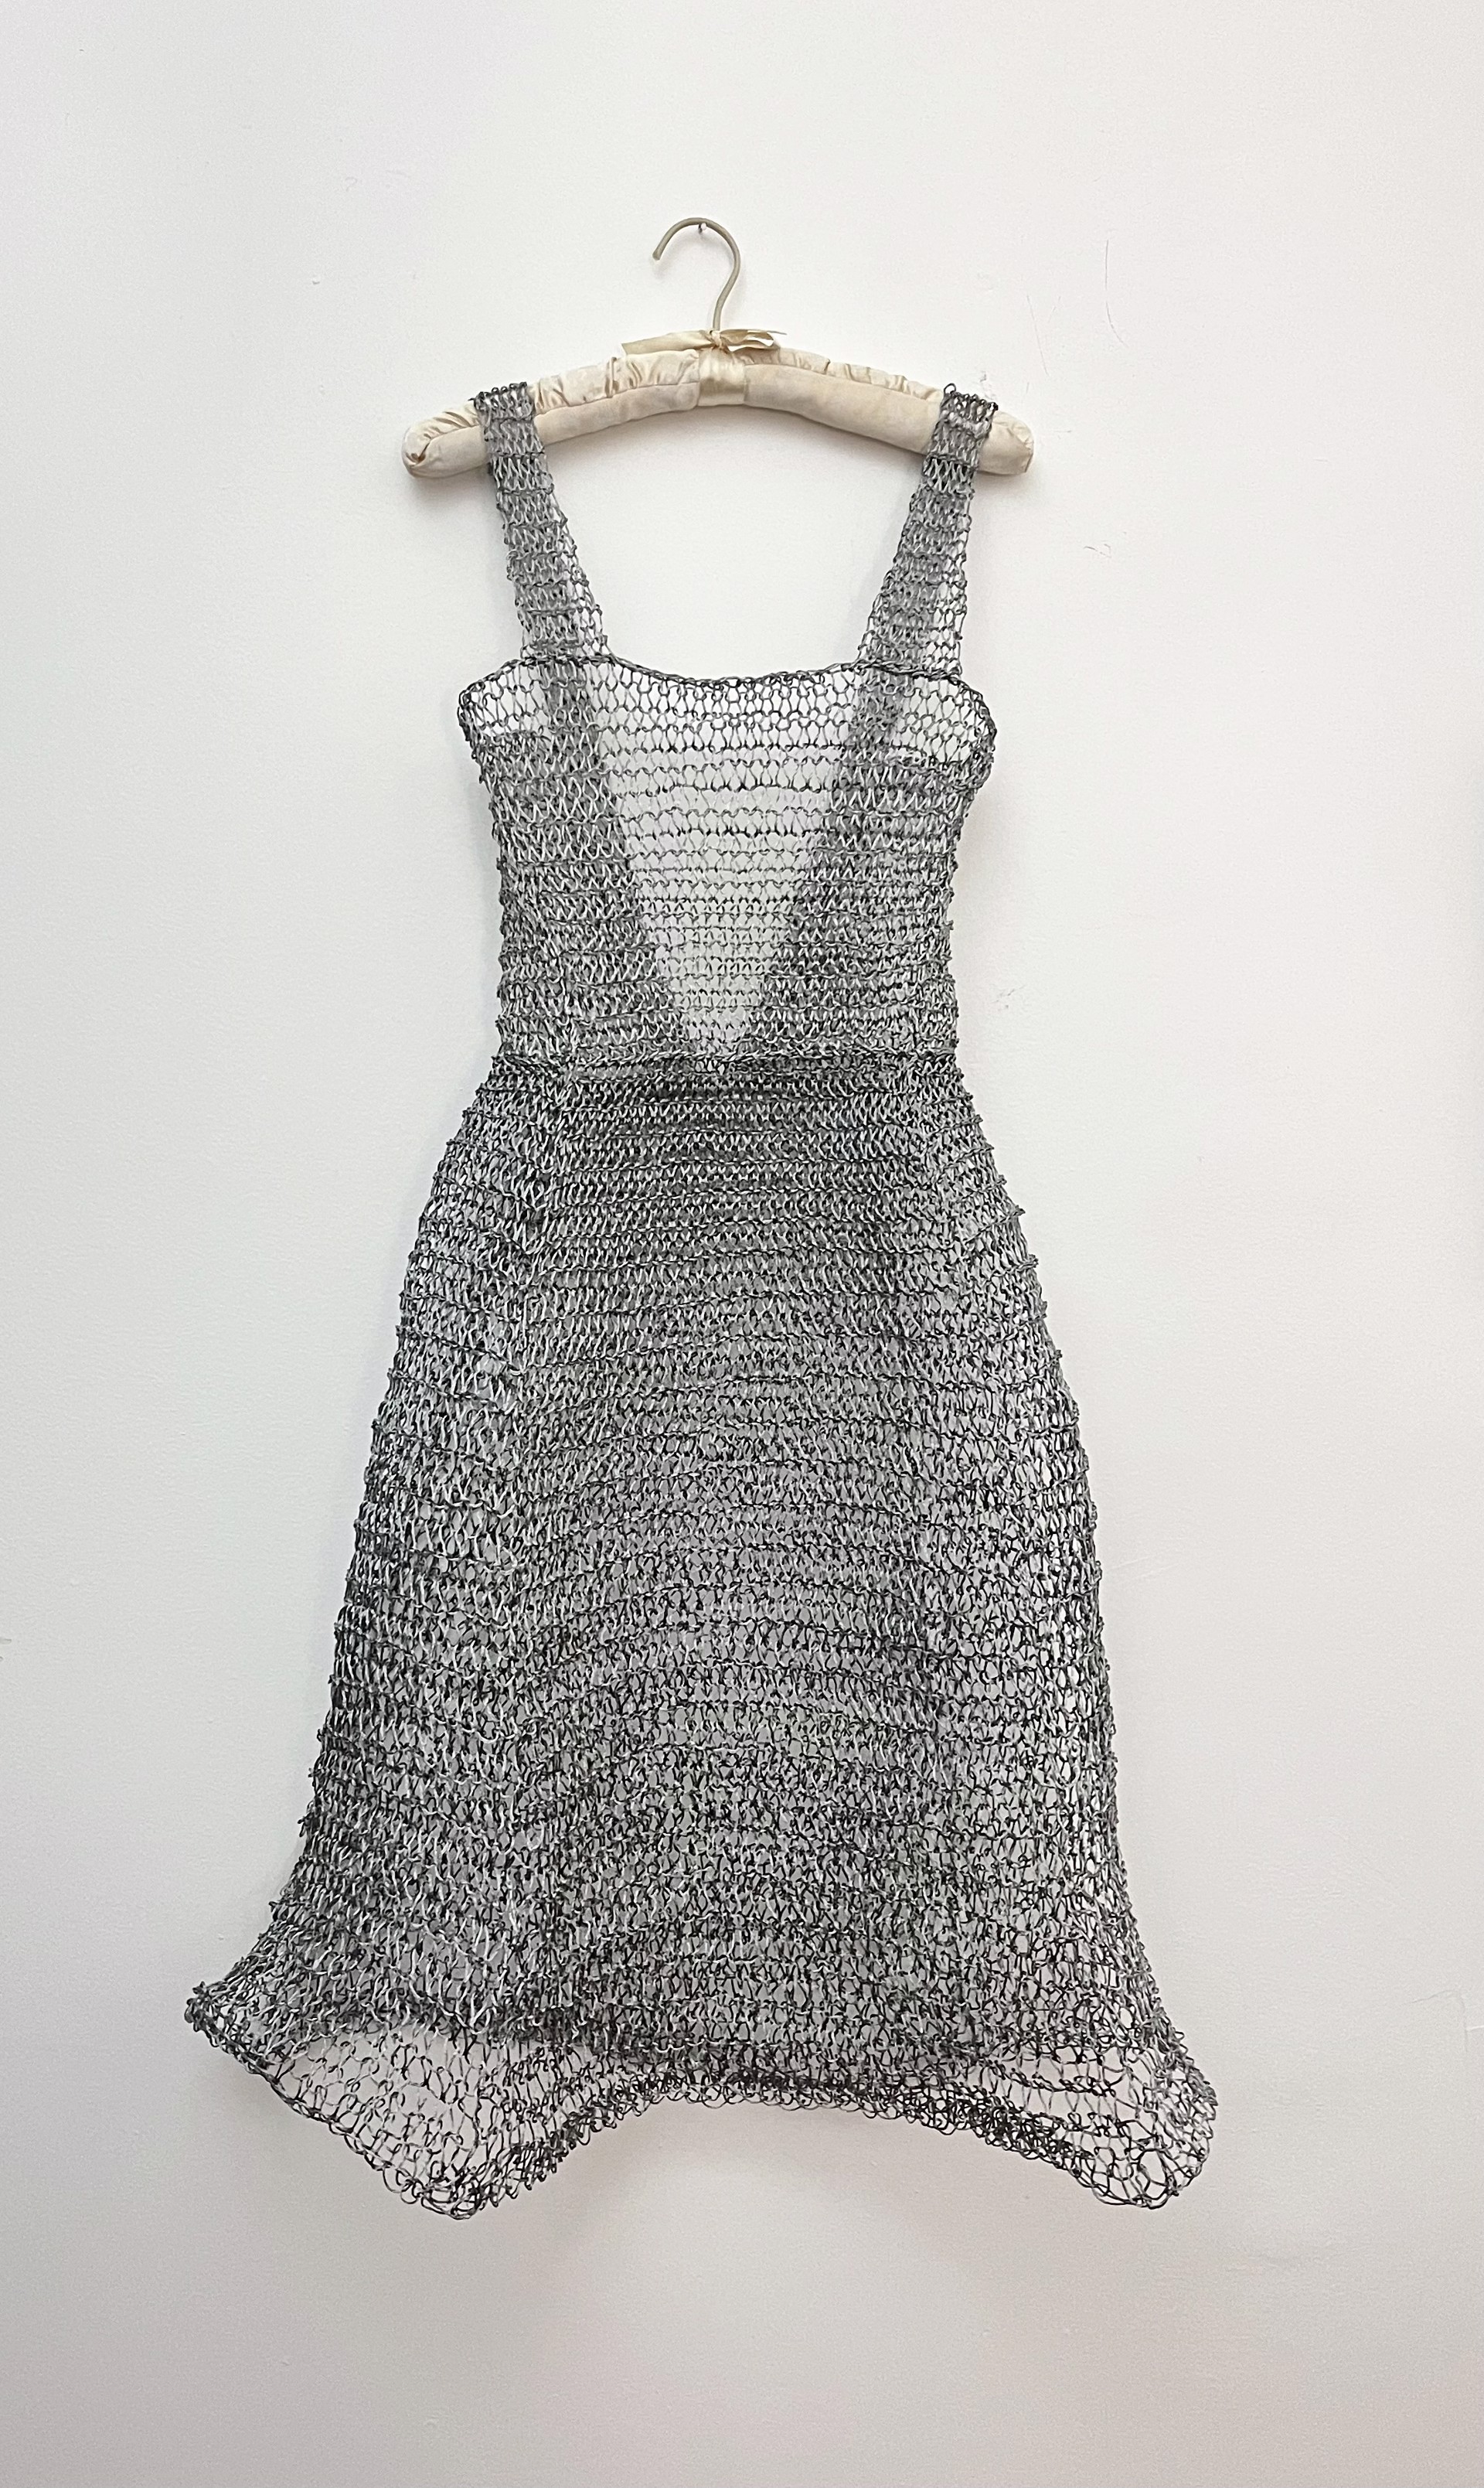 Dress by Sarah Mosteller